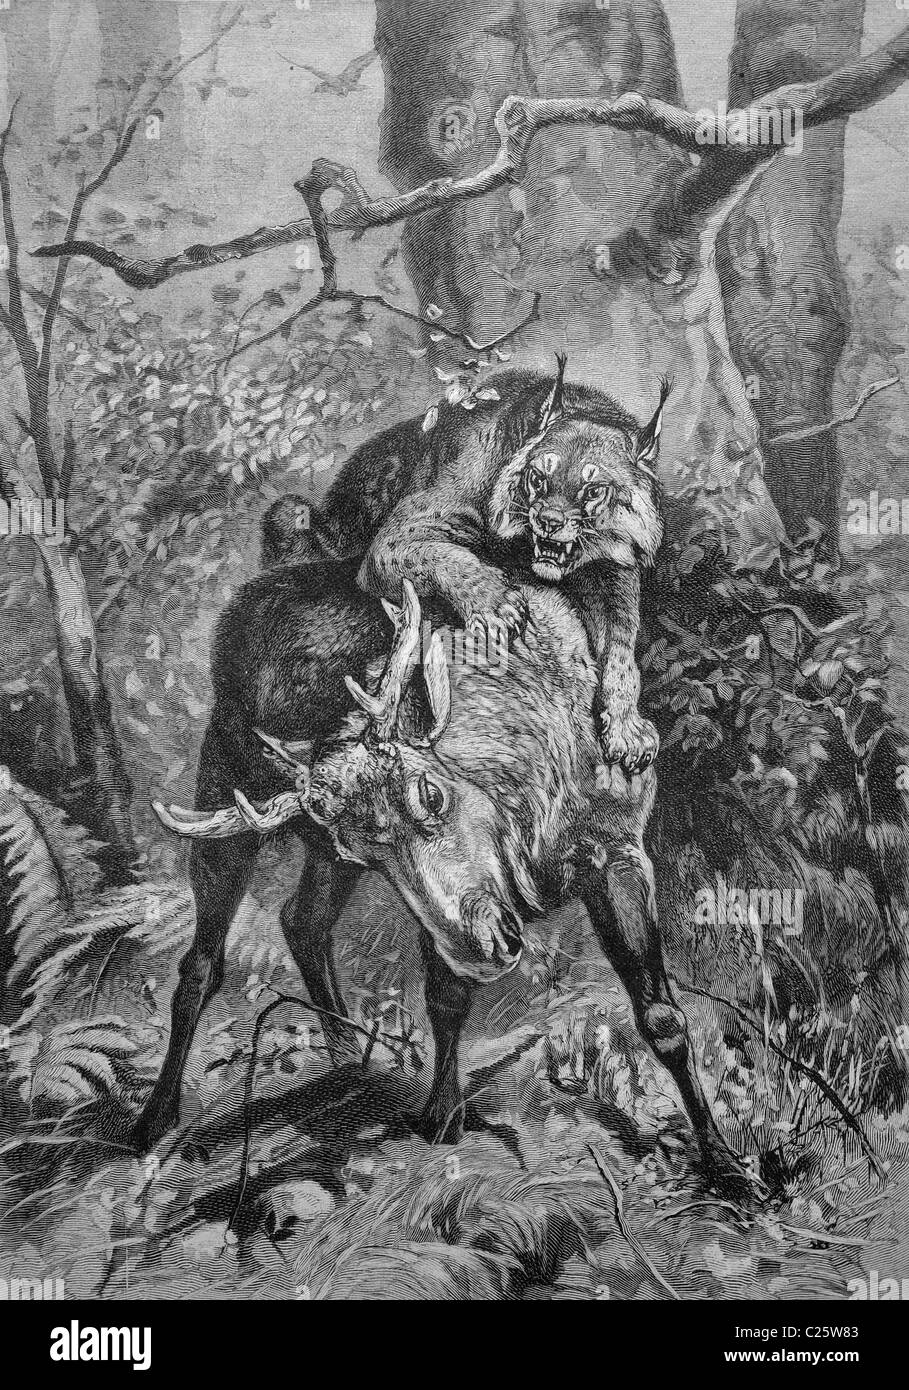 Lynx atacando a un joven alces, ilustración histórica circa 1893 Foto de stock